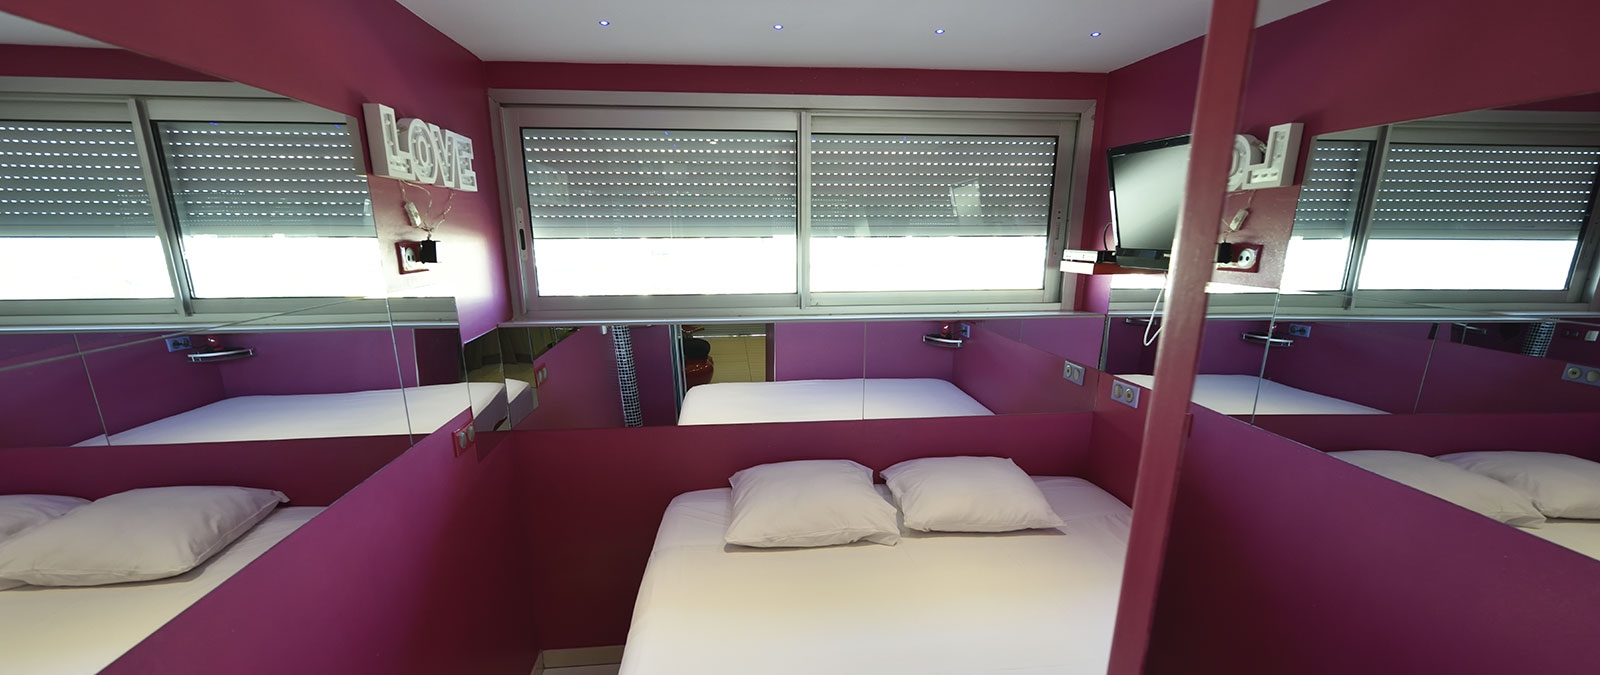 Chambre avec lit double en 180 Location studio naturiste Amour Fou